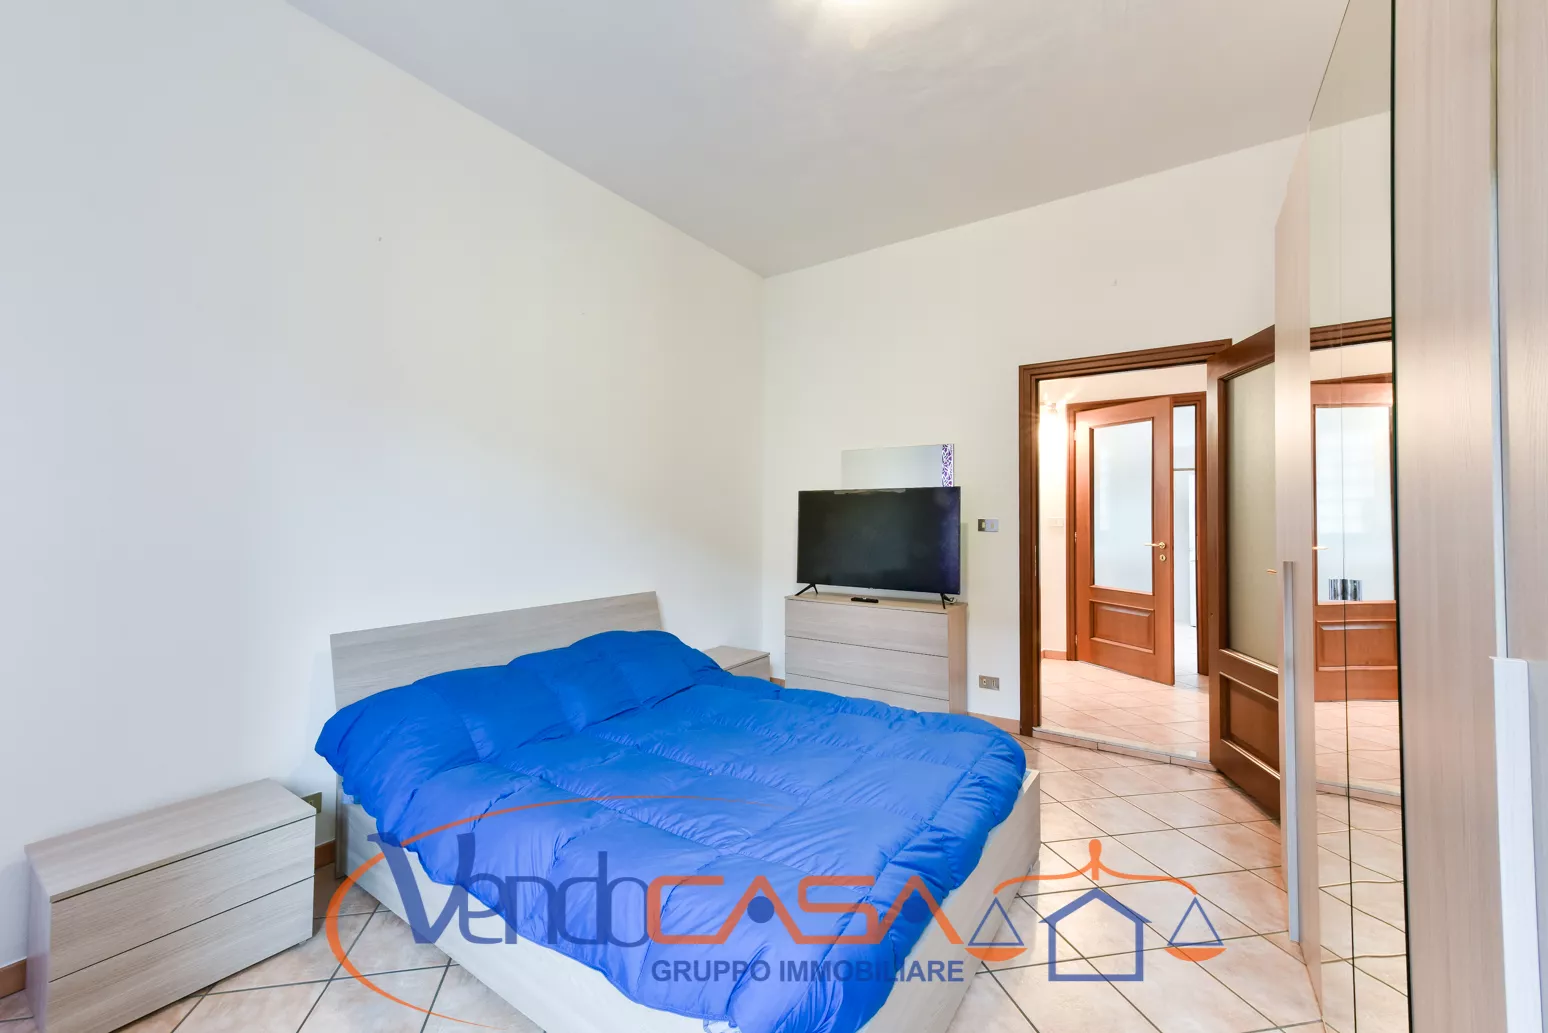 Immagine per Appartamento in vendita a Carmagnola via Valobra 69